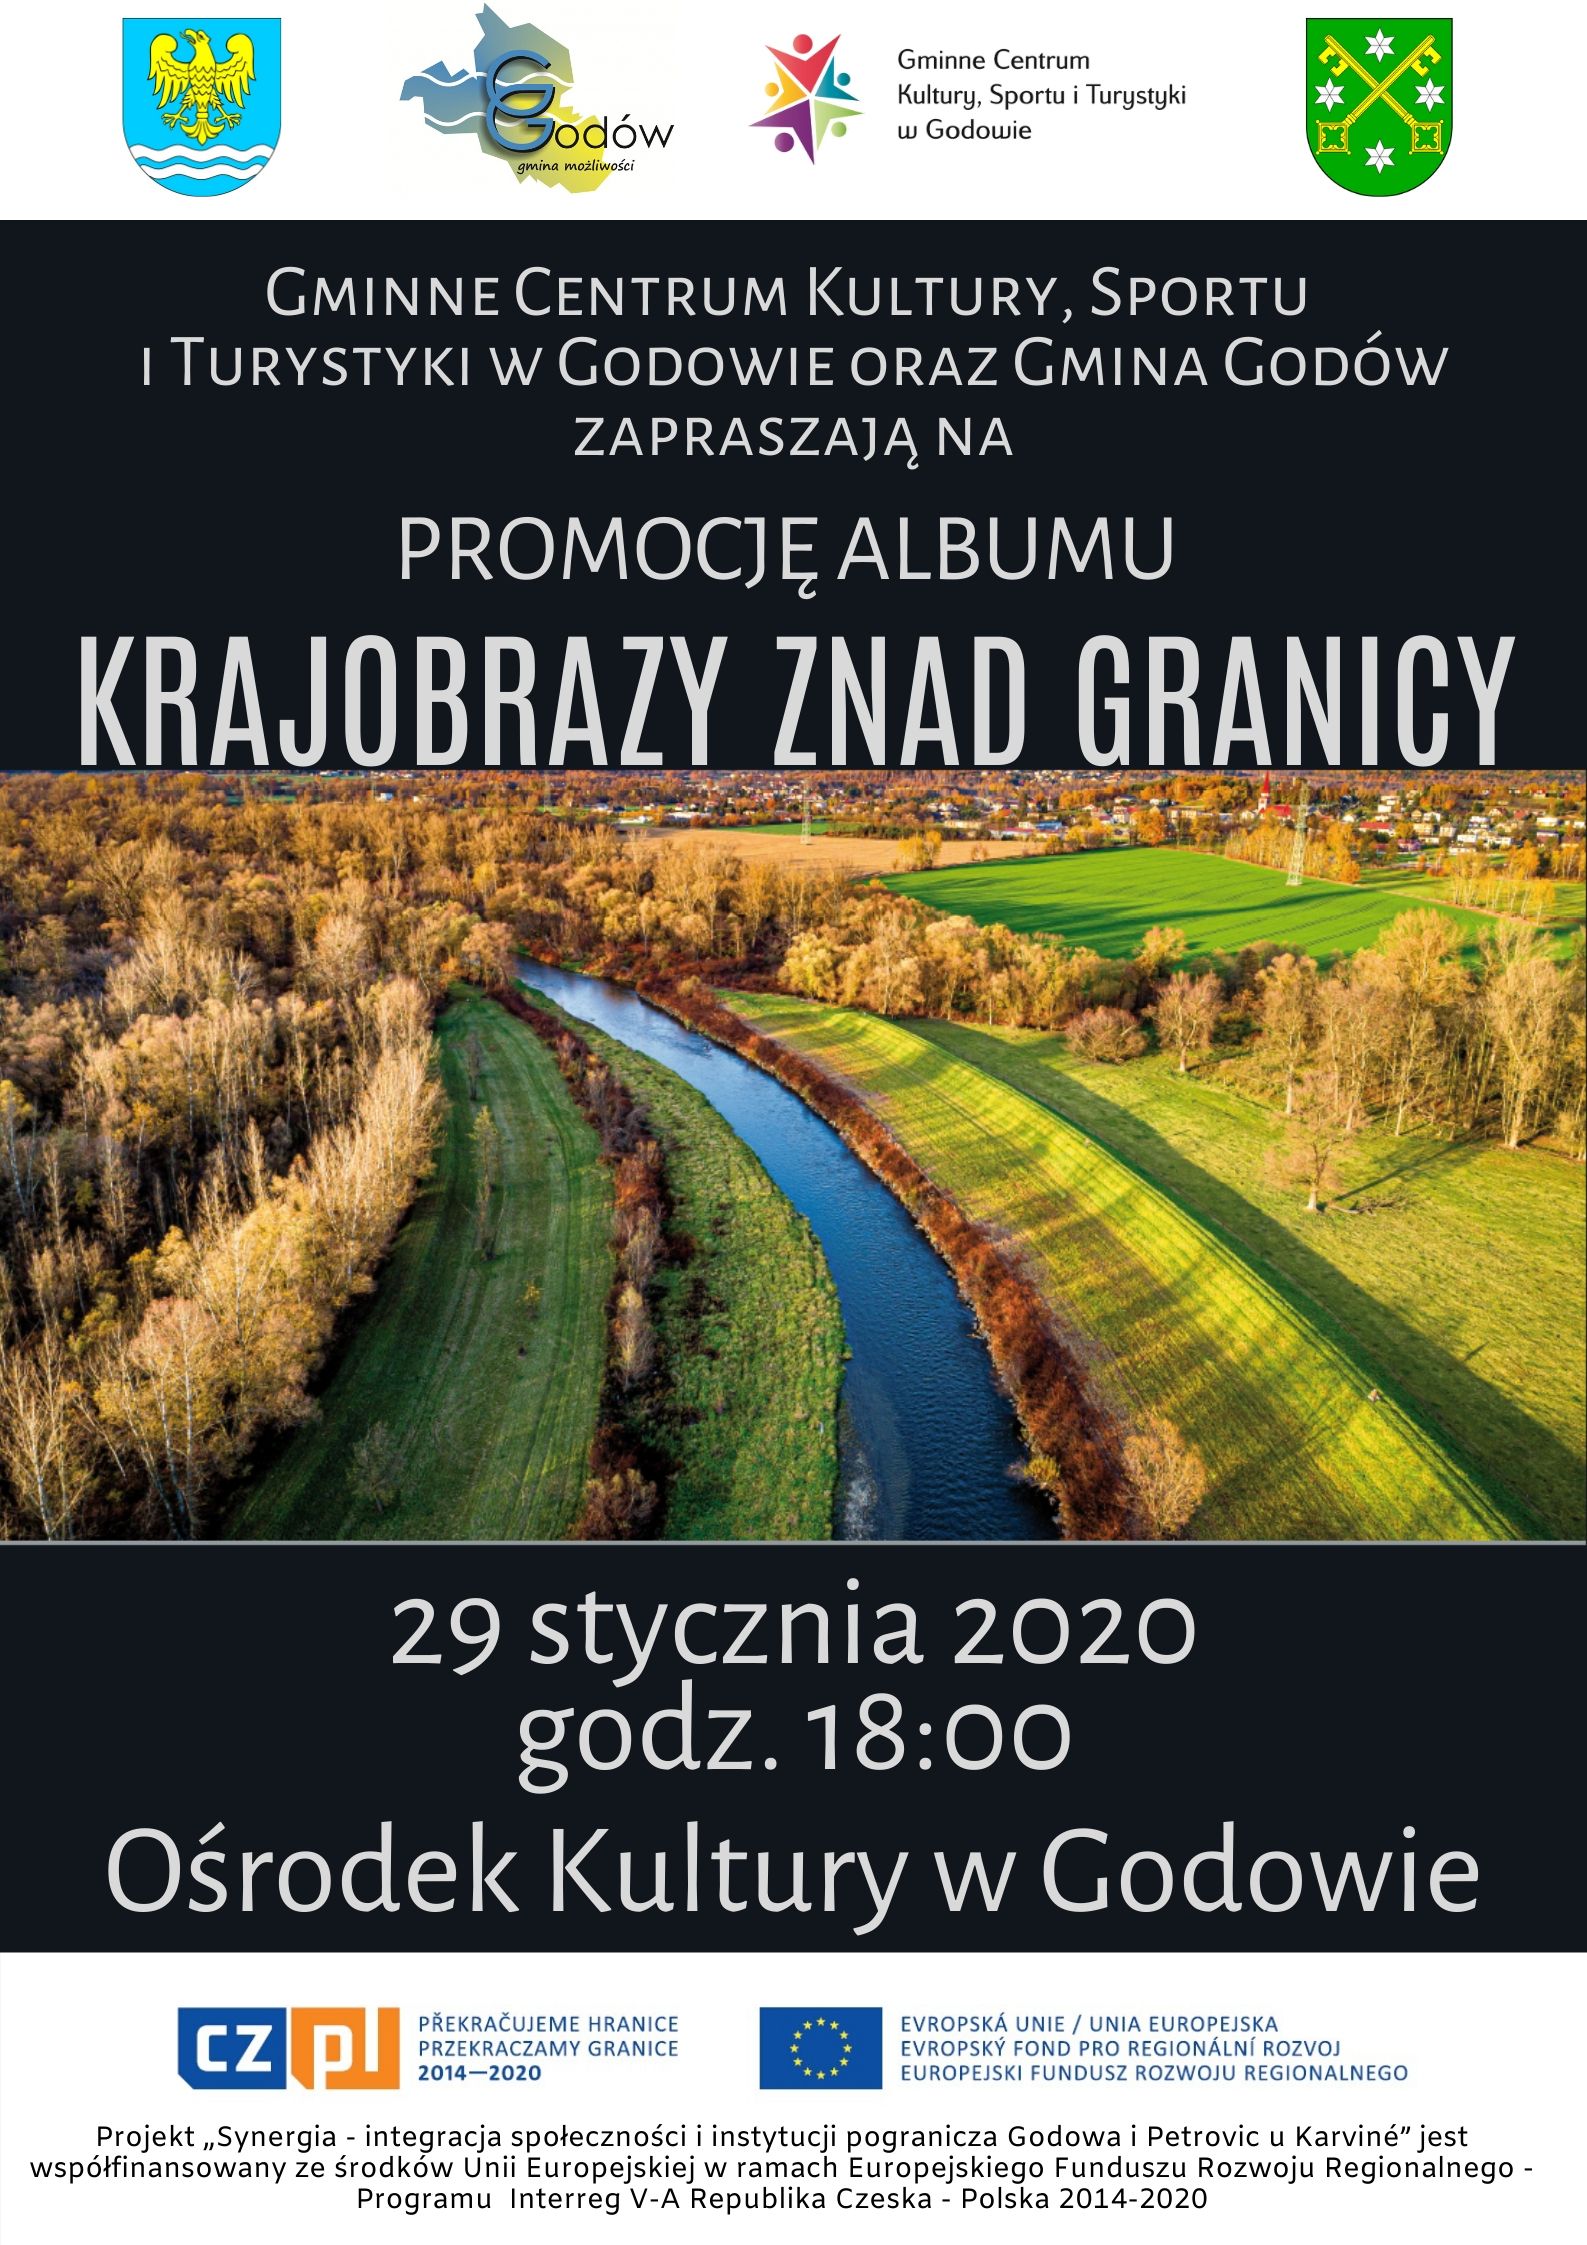 Promocja albumu Krajobrazy znad granicy 29 stycznia 2020 r. o godz. 18:00 w Ośrodku Kultury w Godowie.